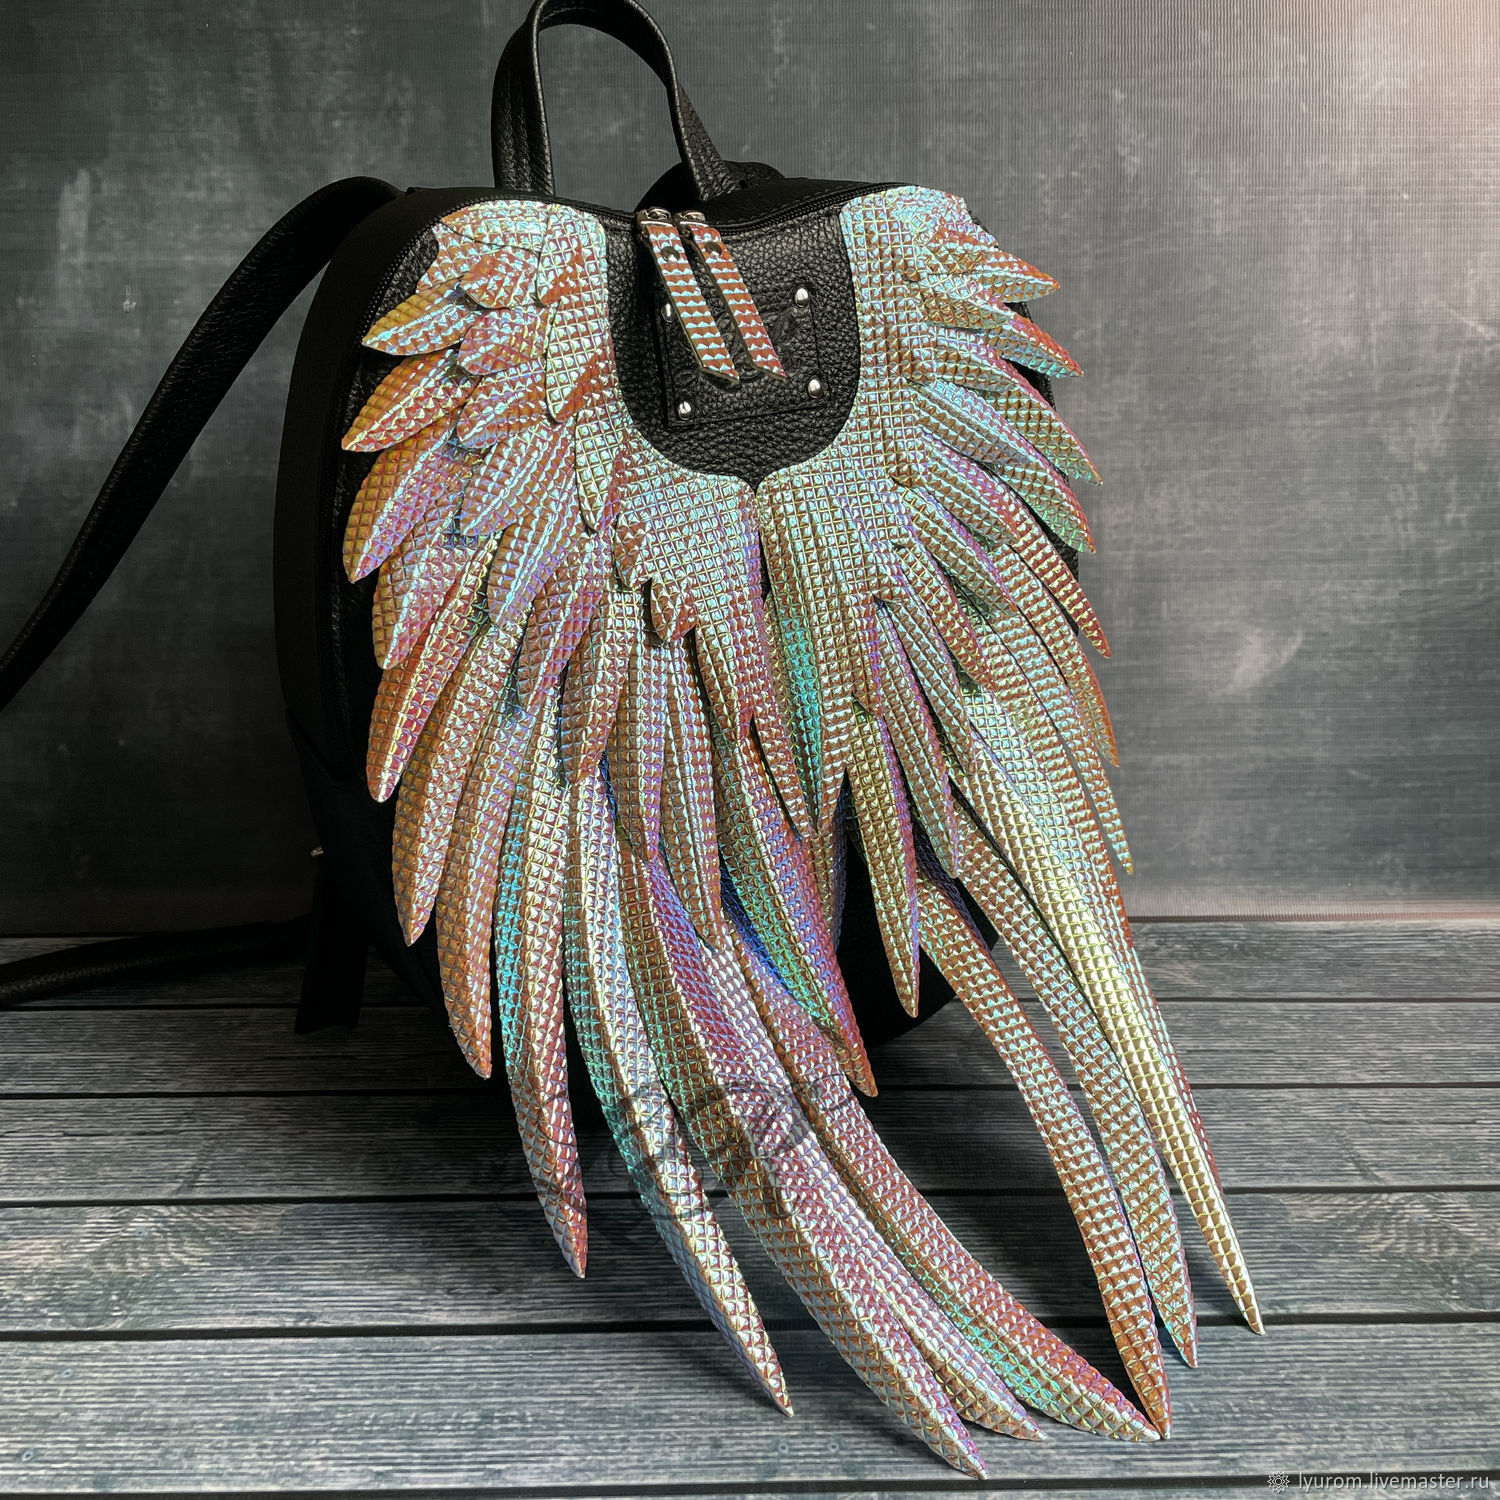 Рюкзак с крыльями